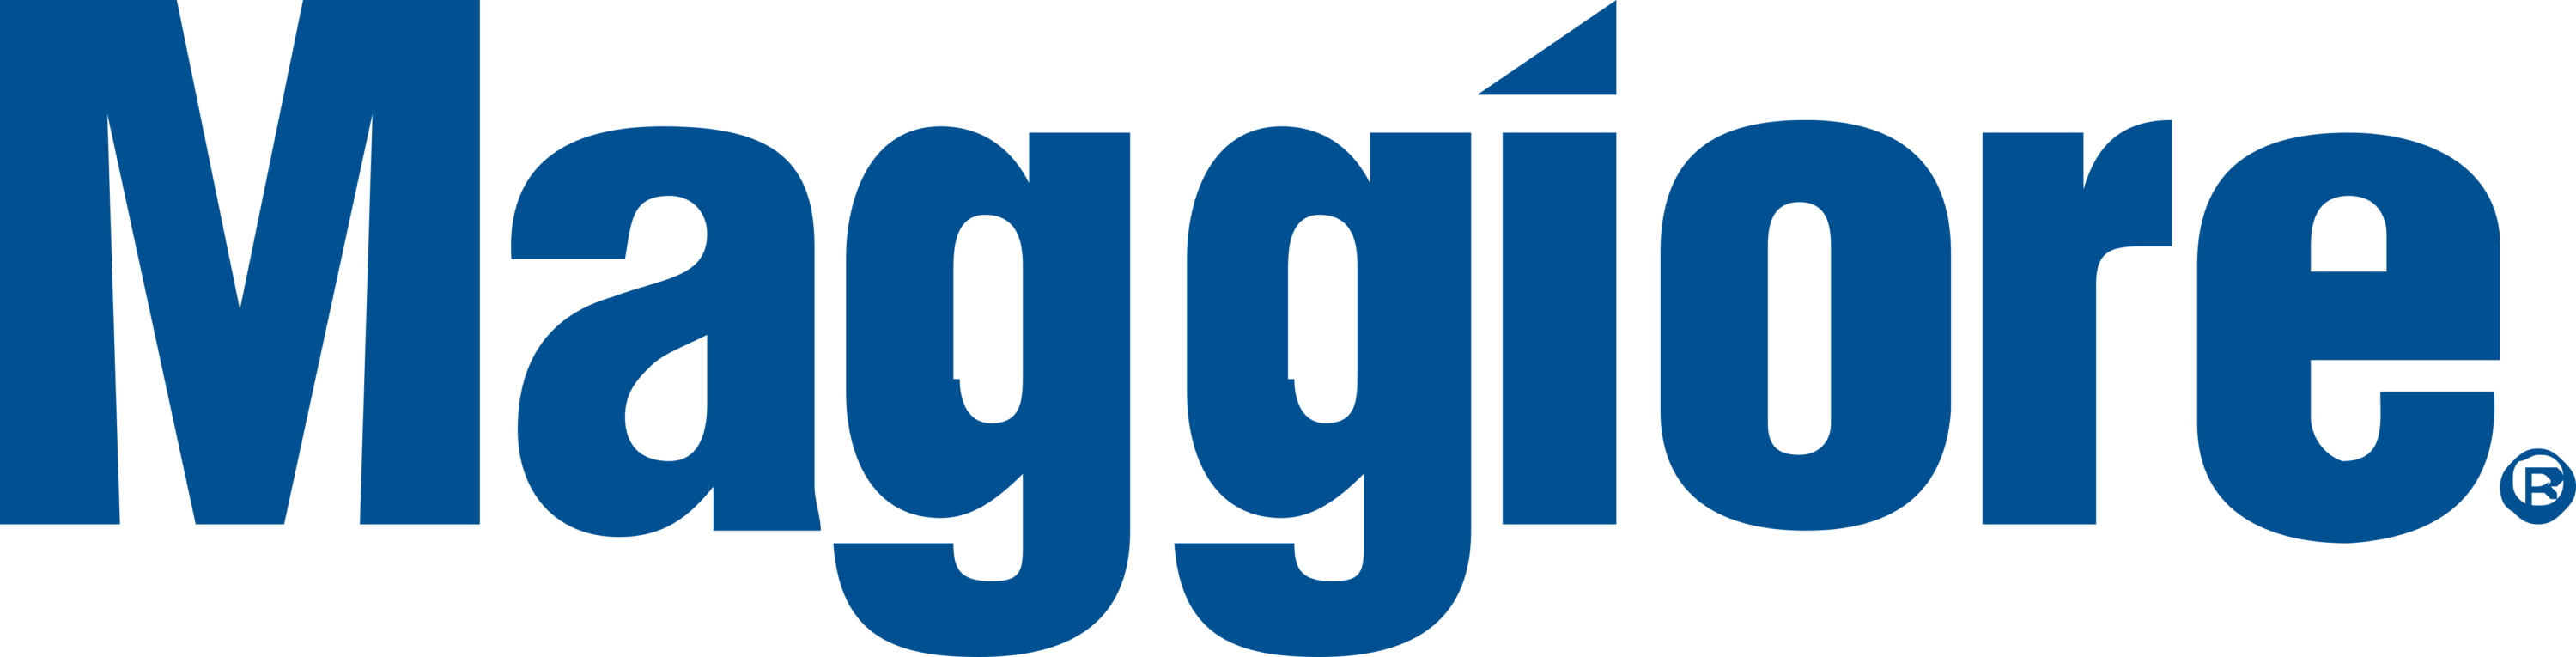 Maggiore Logo